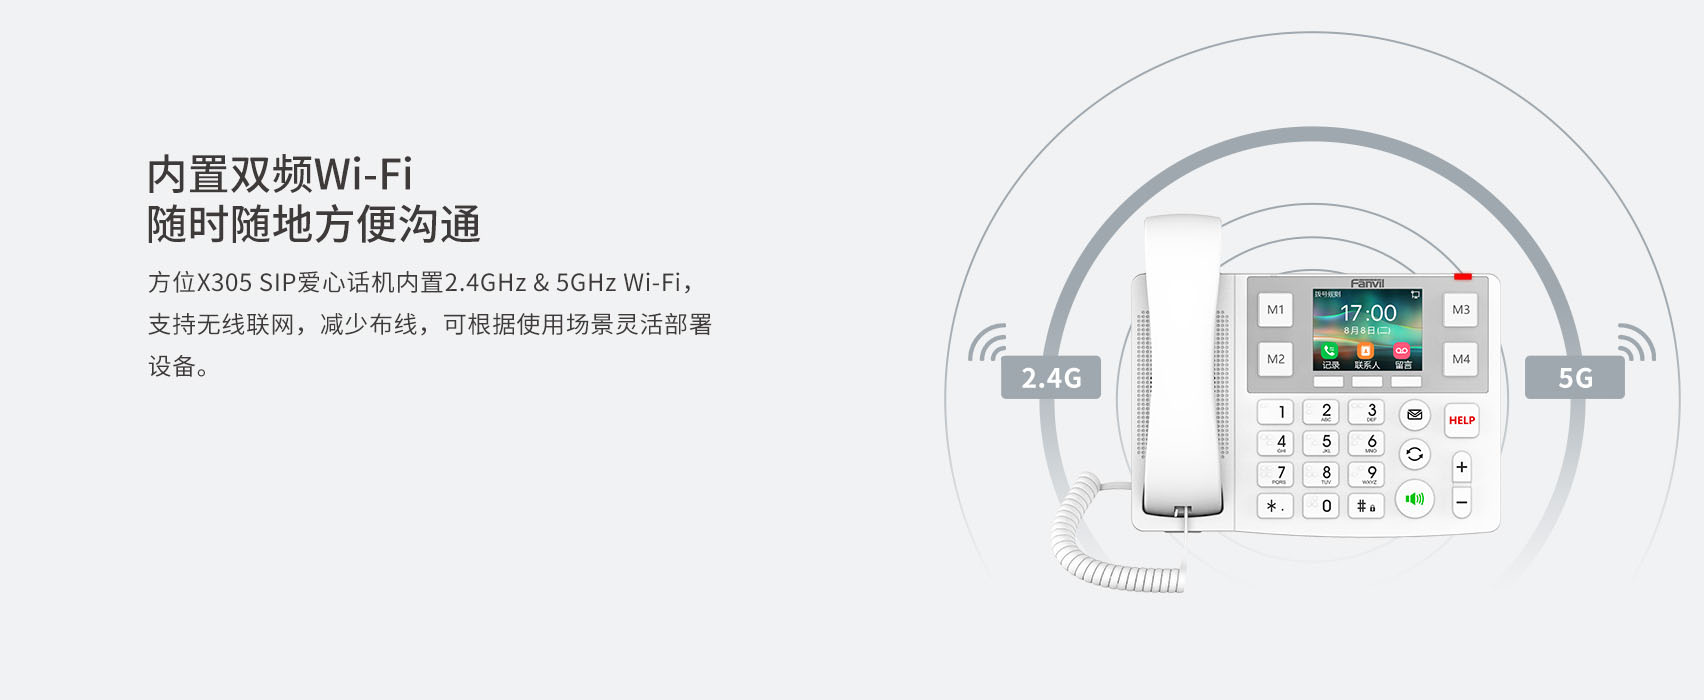 内置双频Wi-Fi随时随地方便沟通